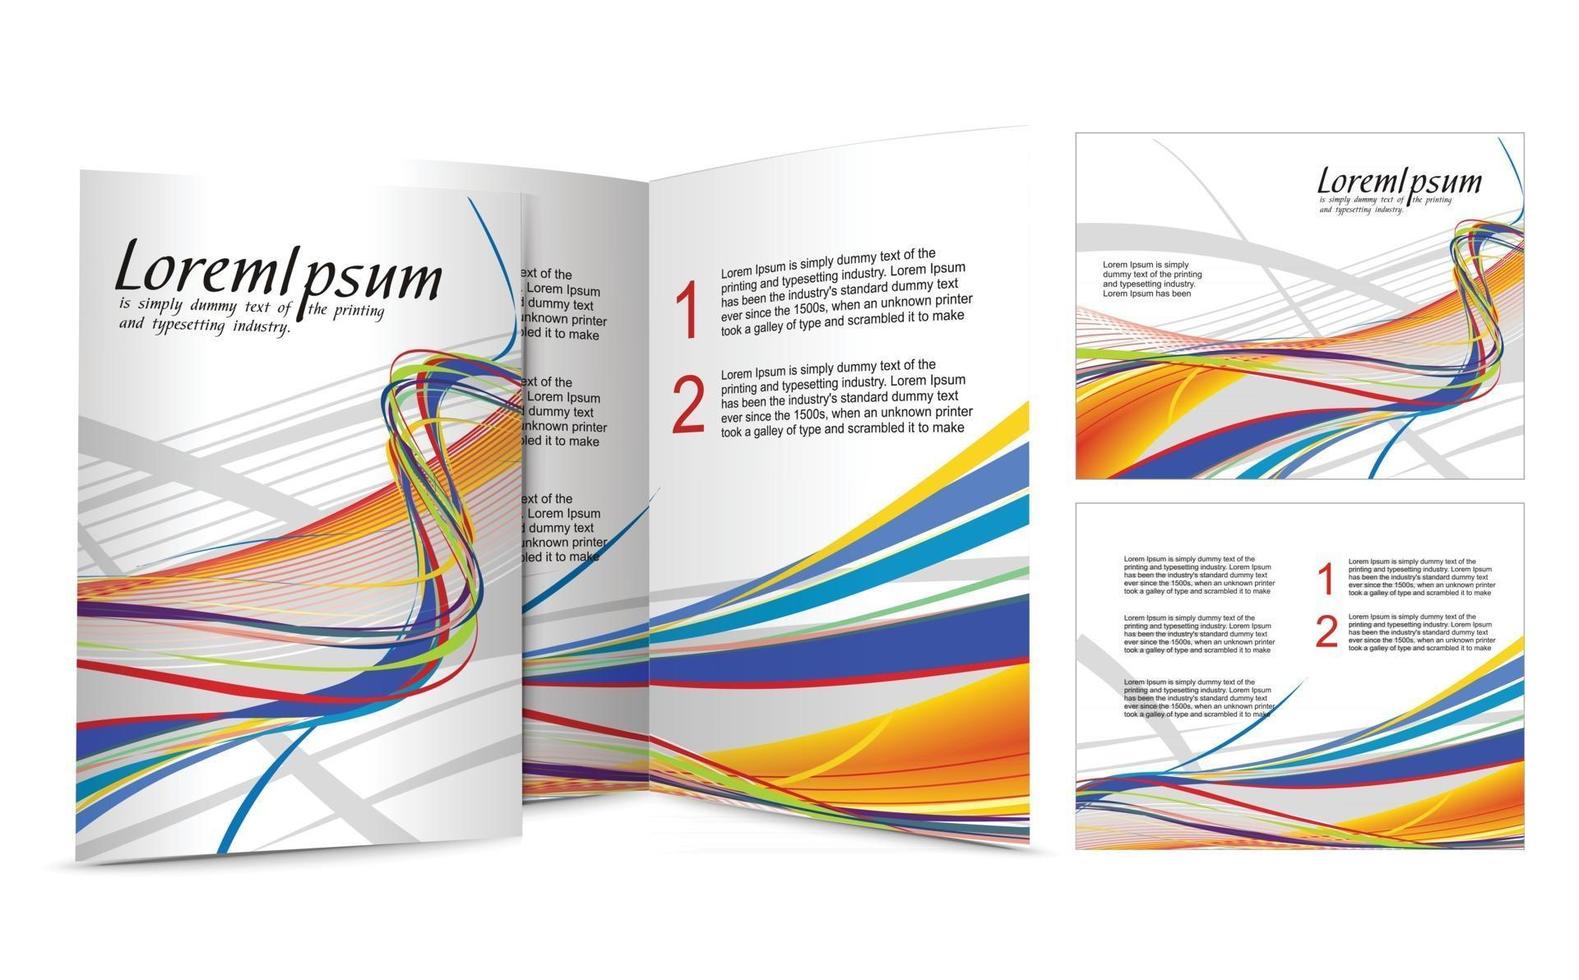 design del modello di brochure creativo vettore